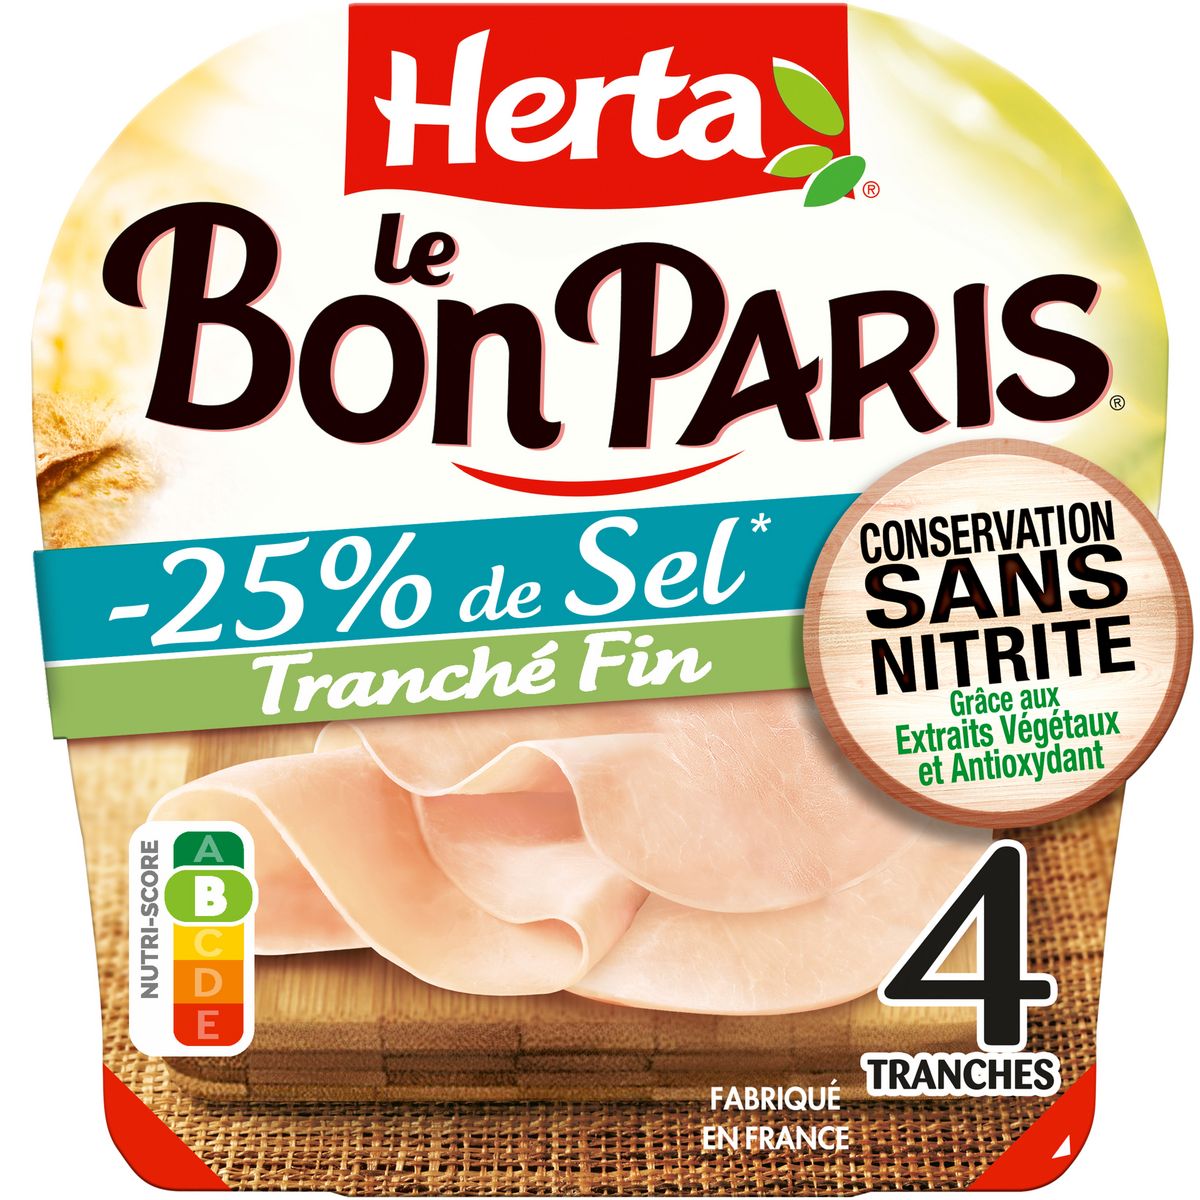 HERTA Le Bon Paris Jambon cuit tranché fin réduit en sel sans nitrite 4 tranches 120g